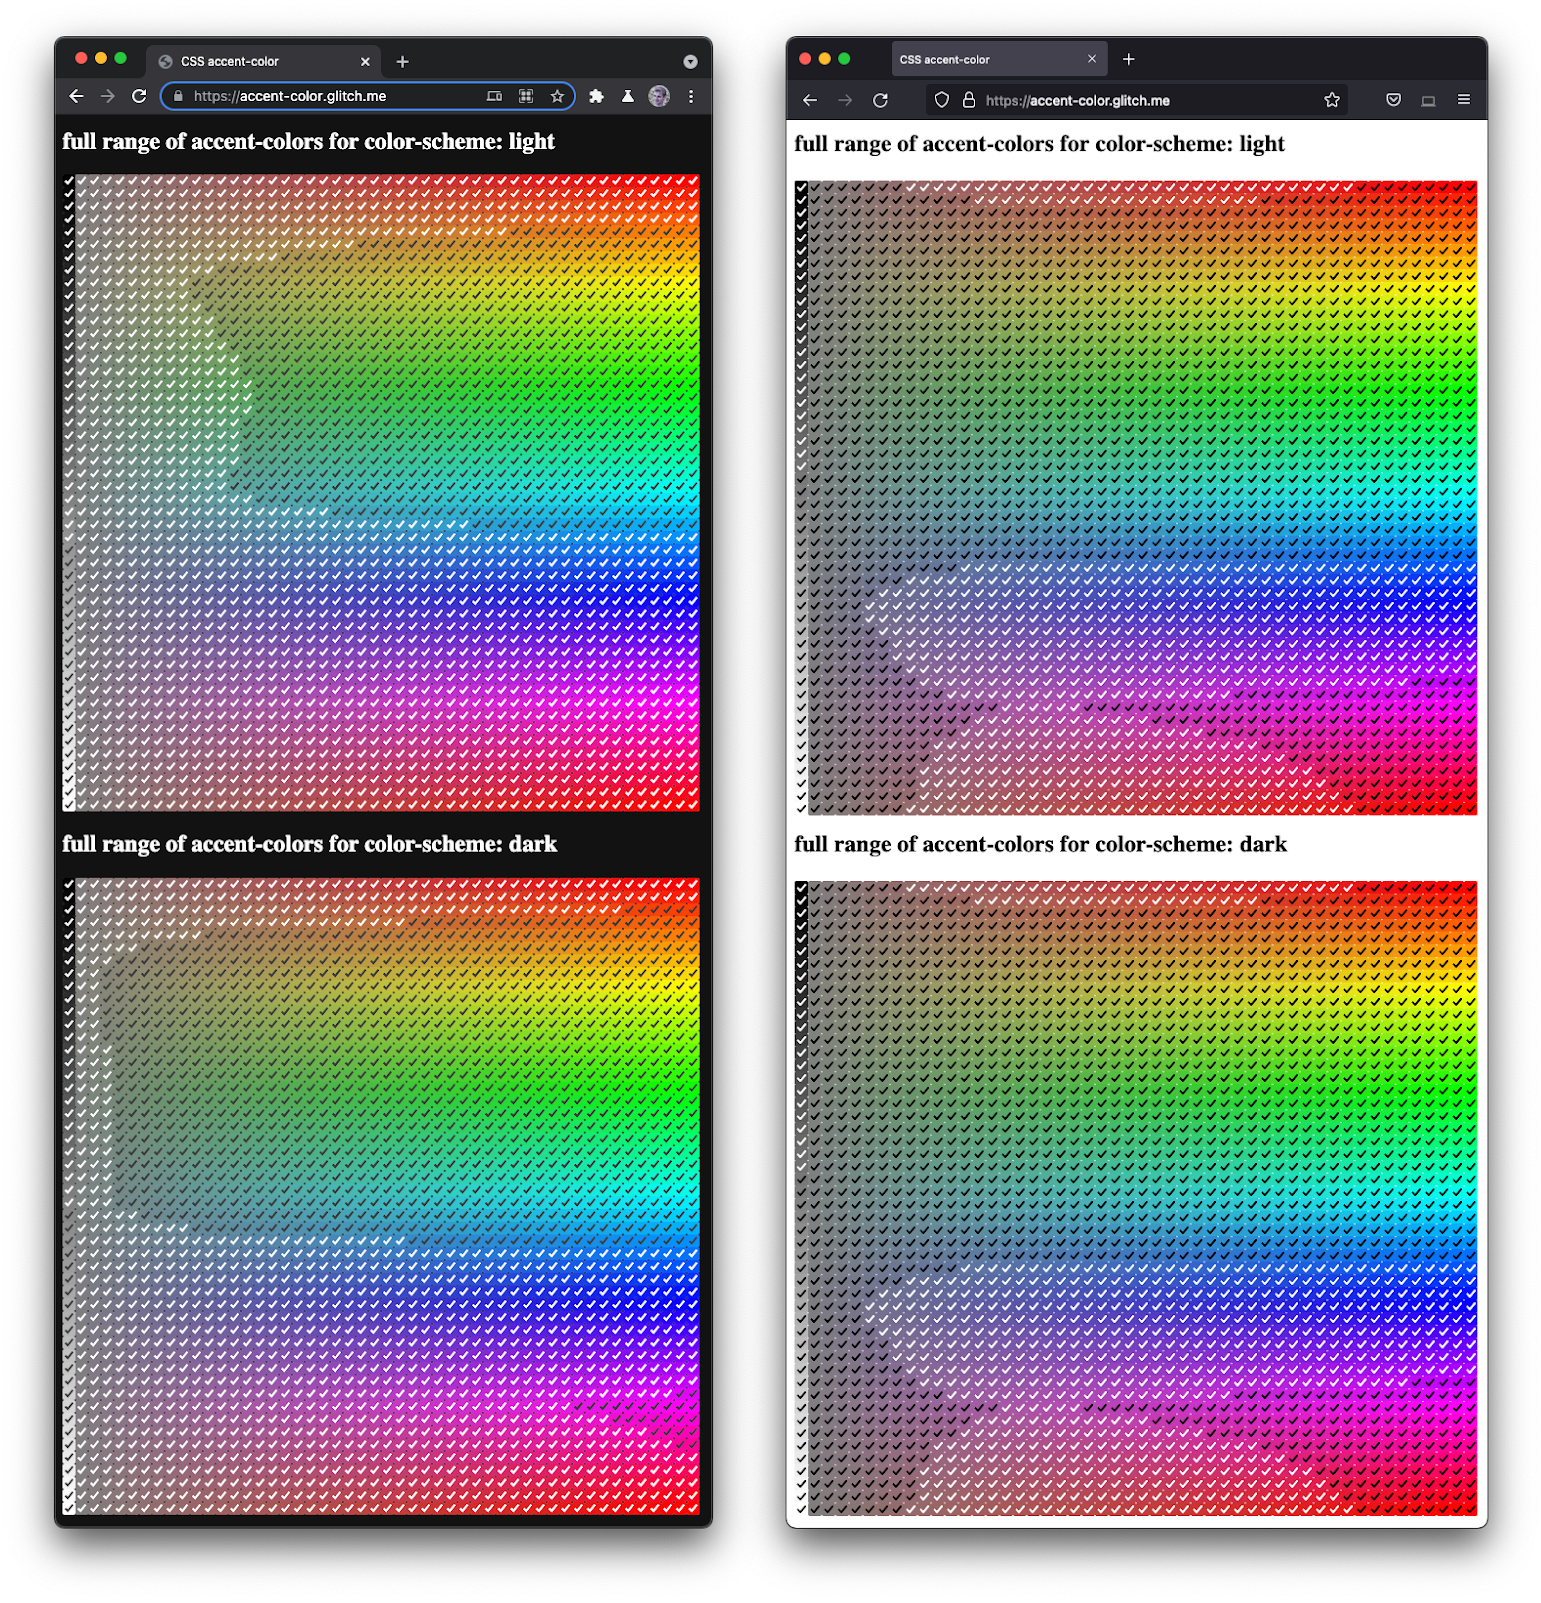 ภาพหน้าจอของ Firefox และ Chromium ที่แสดงคู่กัน
  การแสดงภาพช่องทำเครื่องหมายทุกสีในเฉดสีและความมืดหลากหลายแบบ